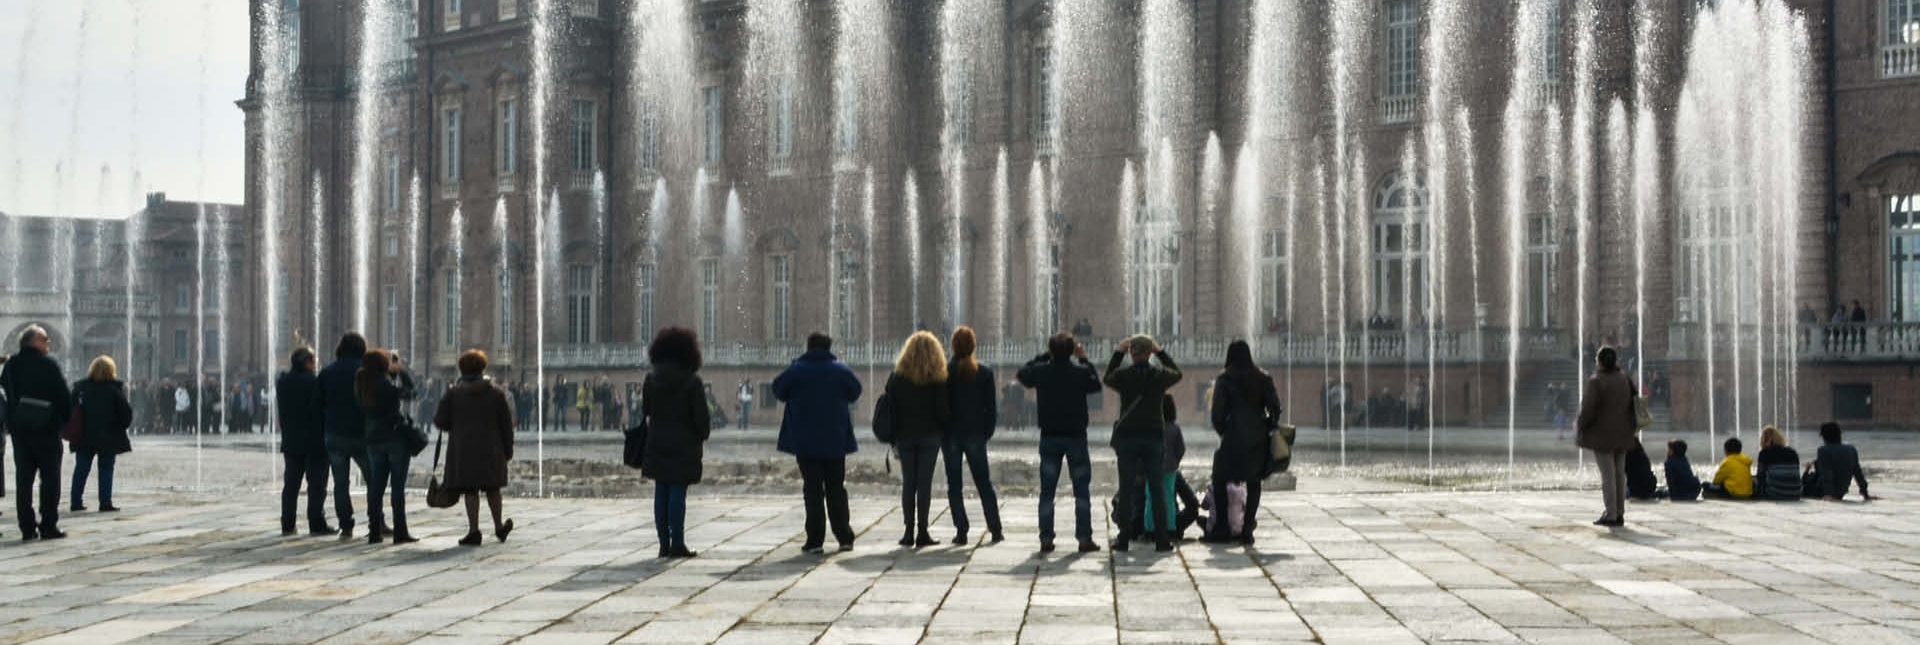 Fontana del Cervo nella Corte d'onore - Foto di Fabiola Giuliani